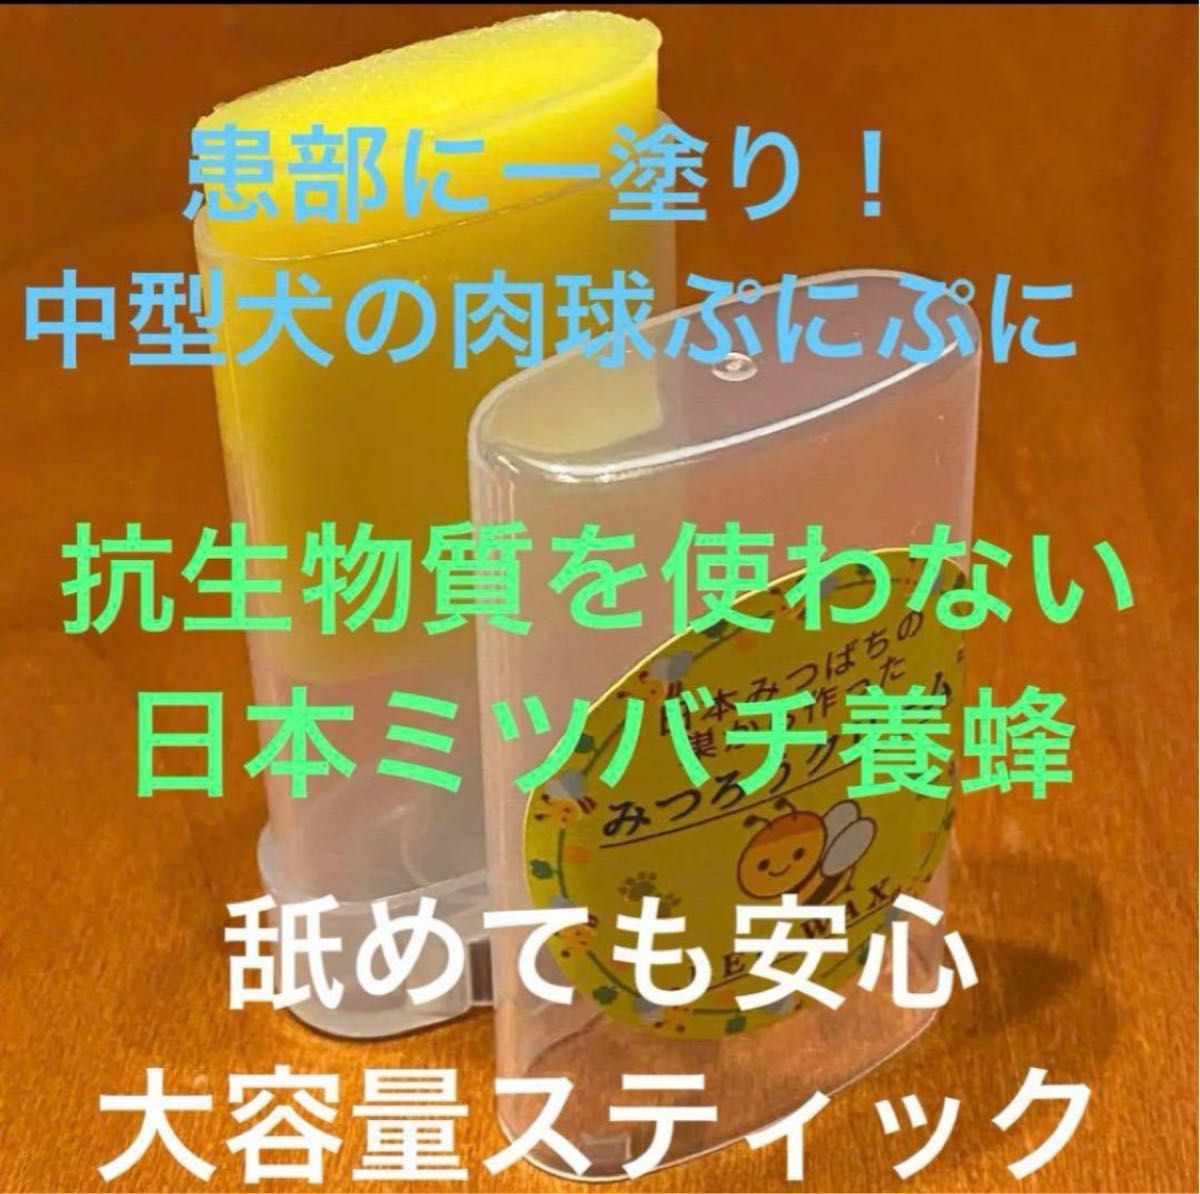 日本ミツバチ 蜜蝋 肉球クリーム 手に付かないスティックタイプ 大容量 抗生物質なし 添加物なし